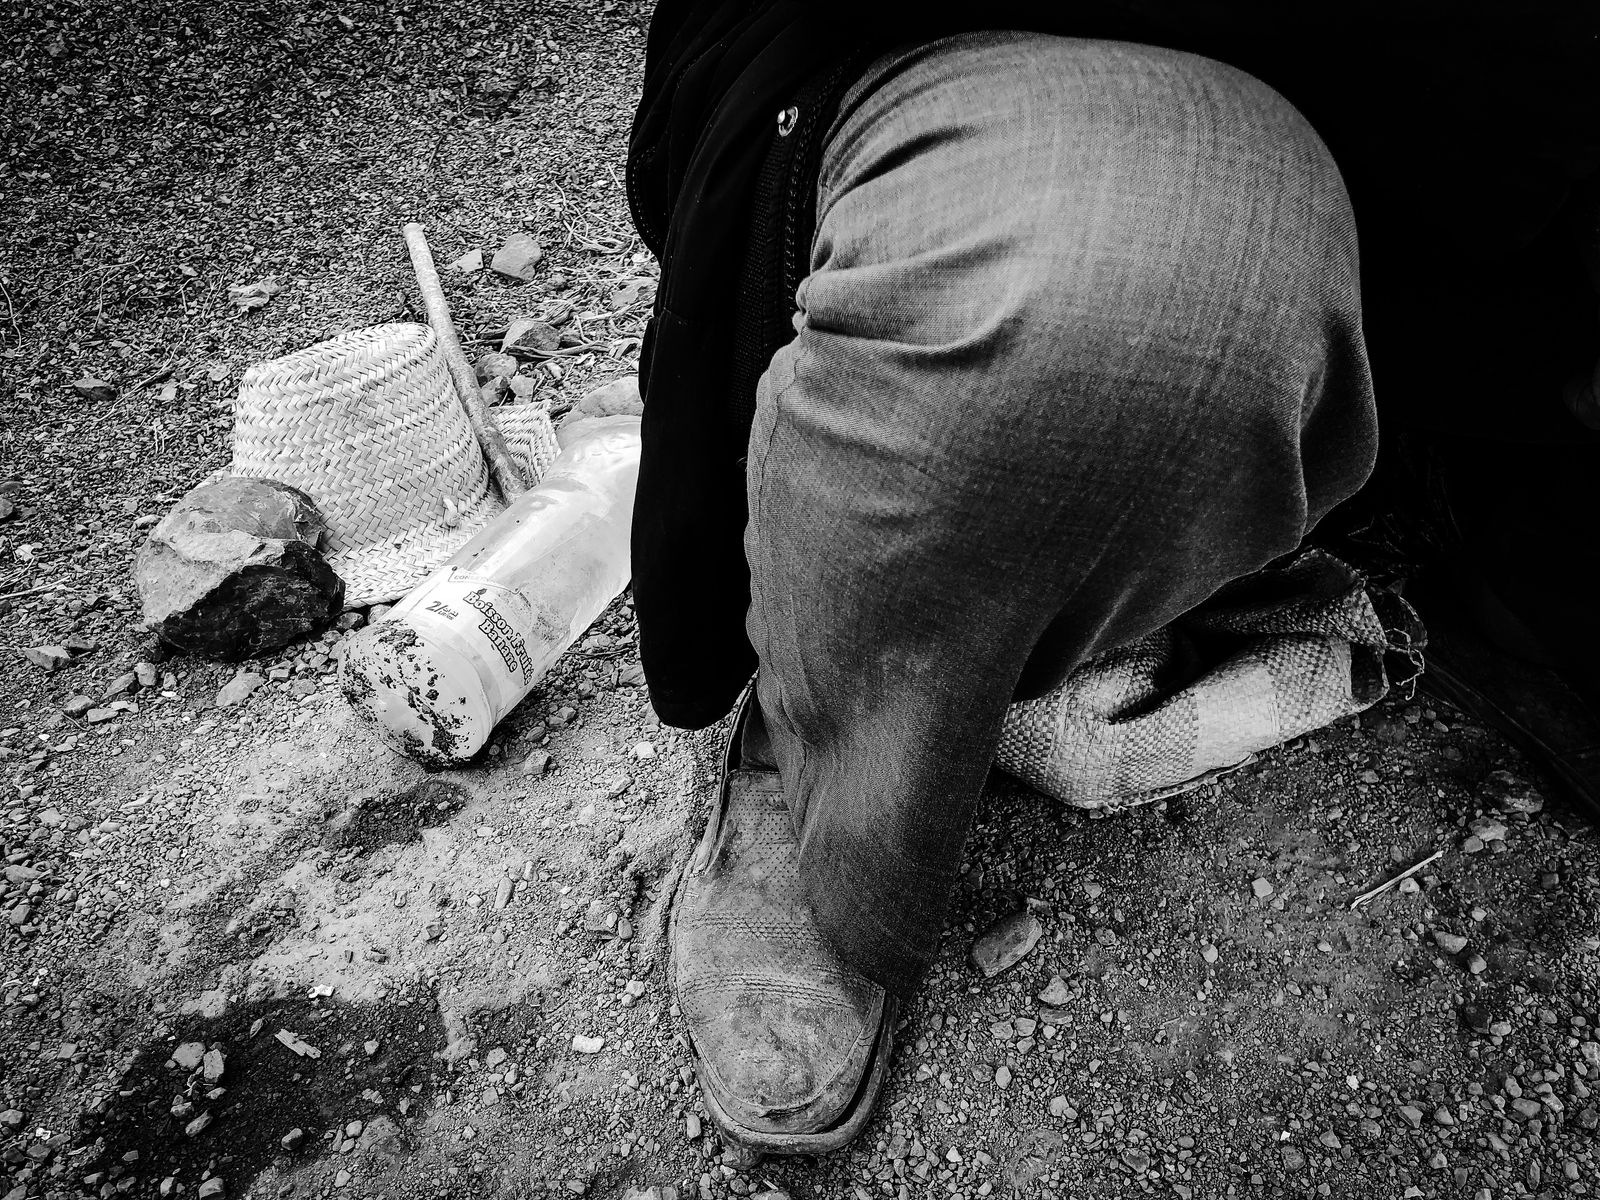 © Fethi Sahraoui - Details on the feet of a blind person, Kahwet El Rih, Algeria, 2020